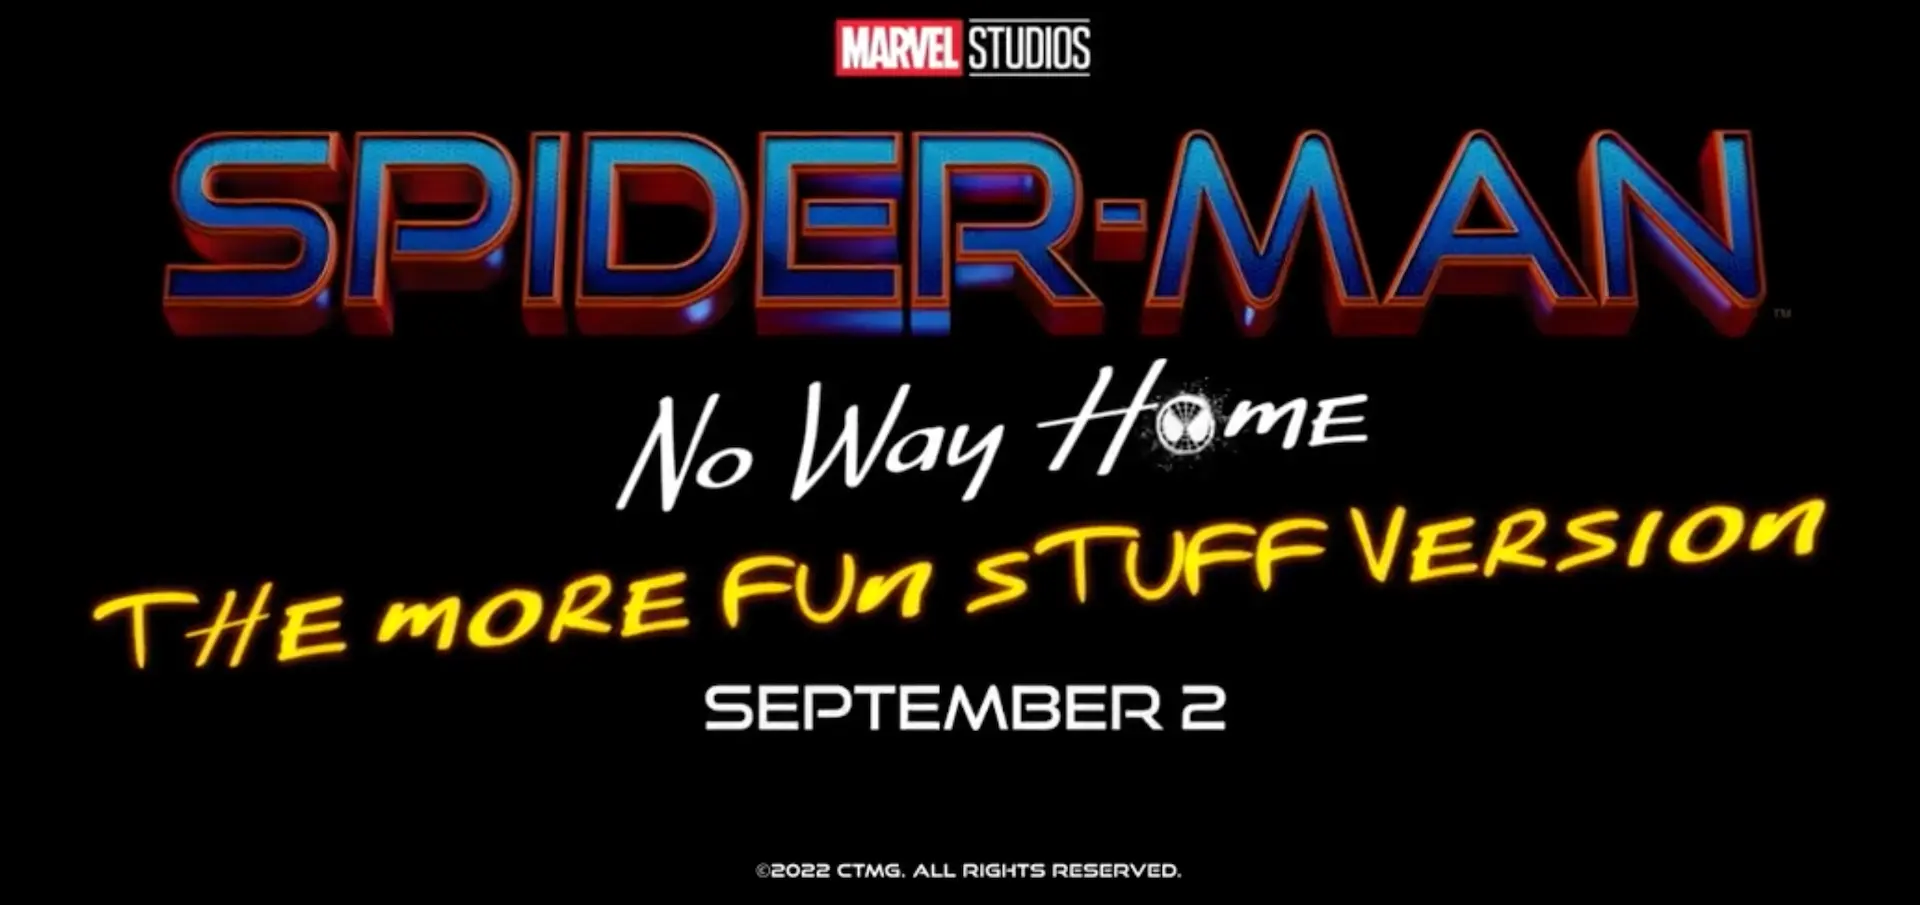 Después del streaming, Spider-Man 3: No Way Home vuelve al cine 